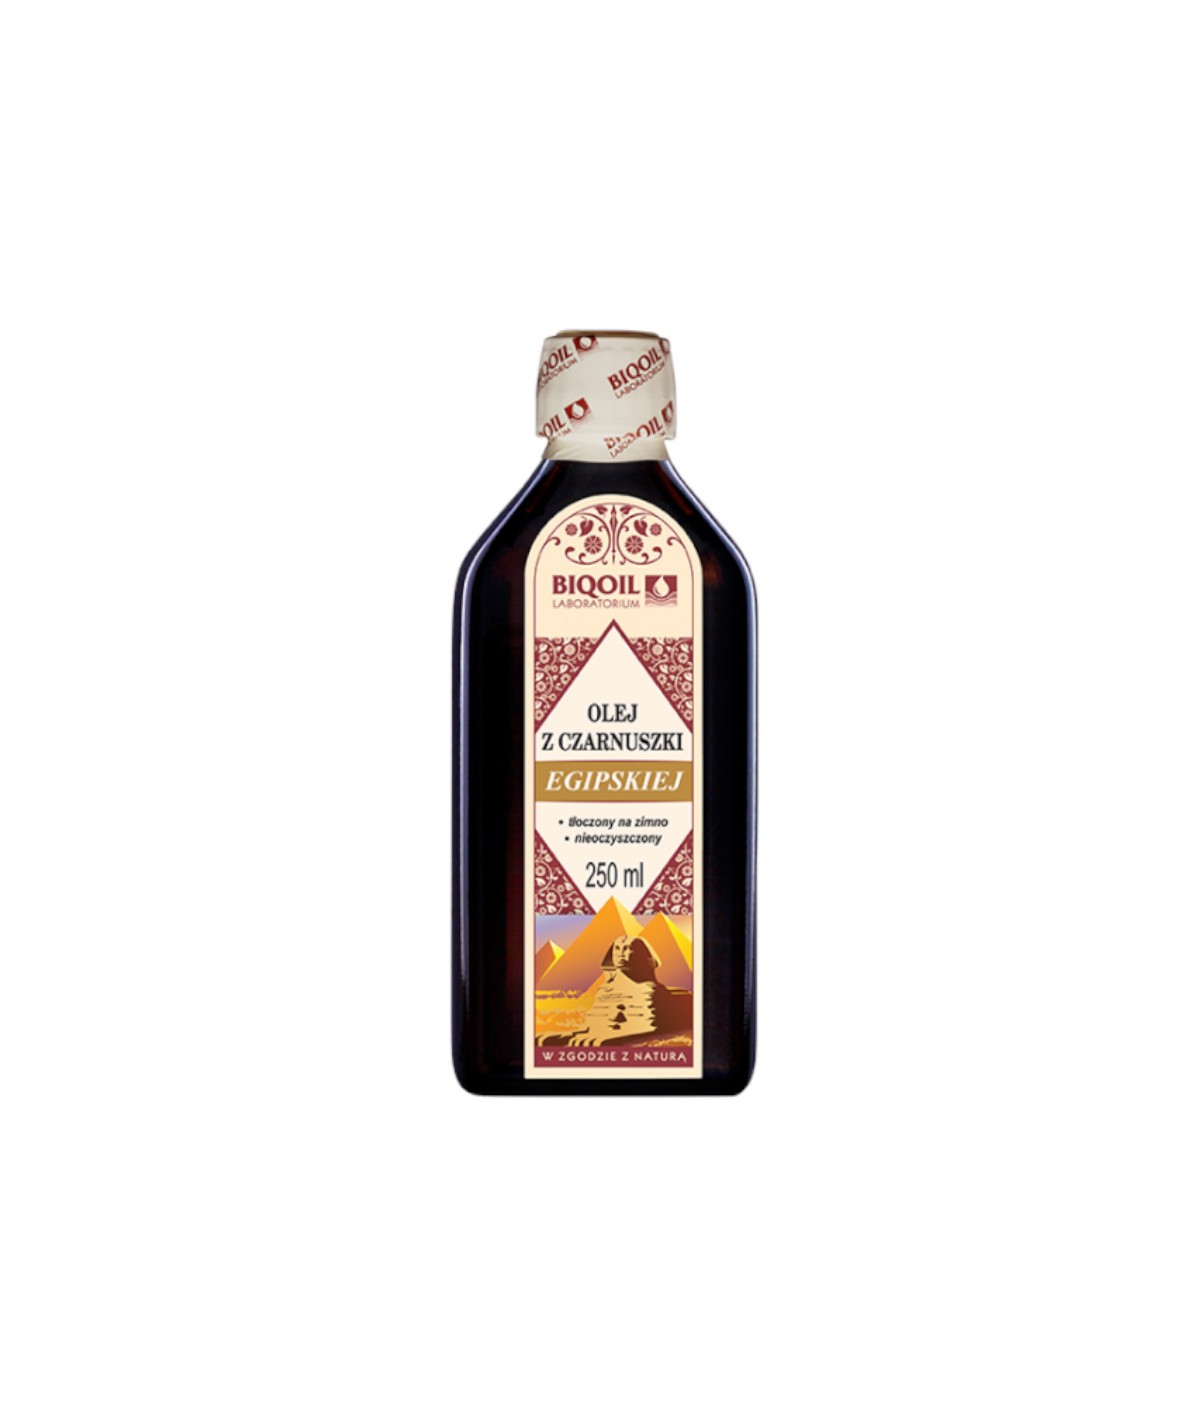 Olej z czarnuszki egipskiej Biooil 250 ml